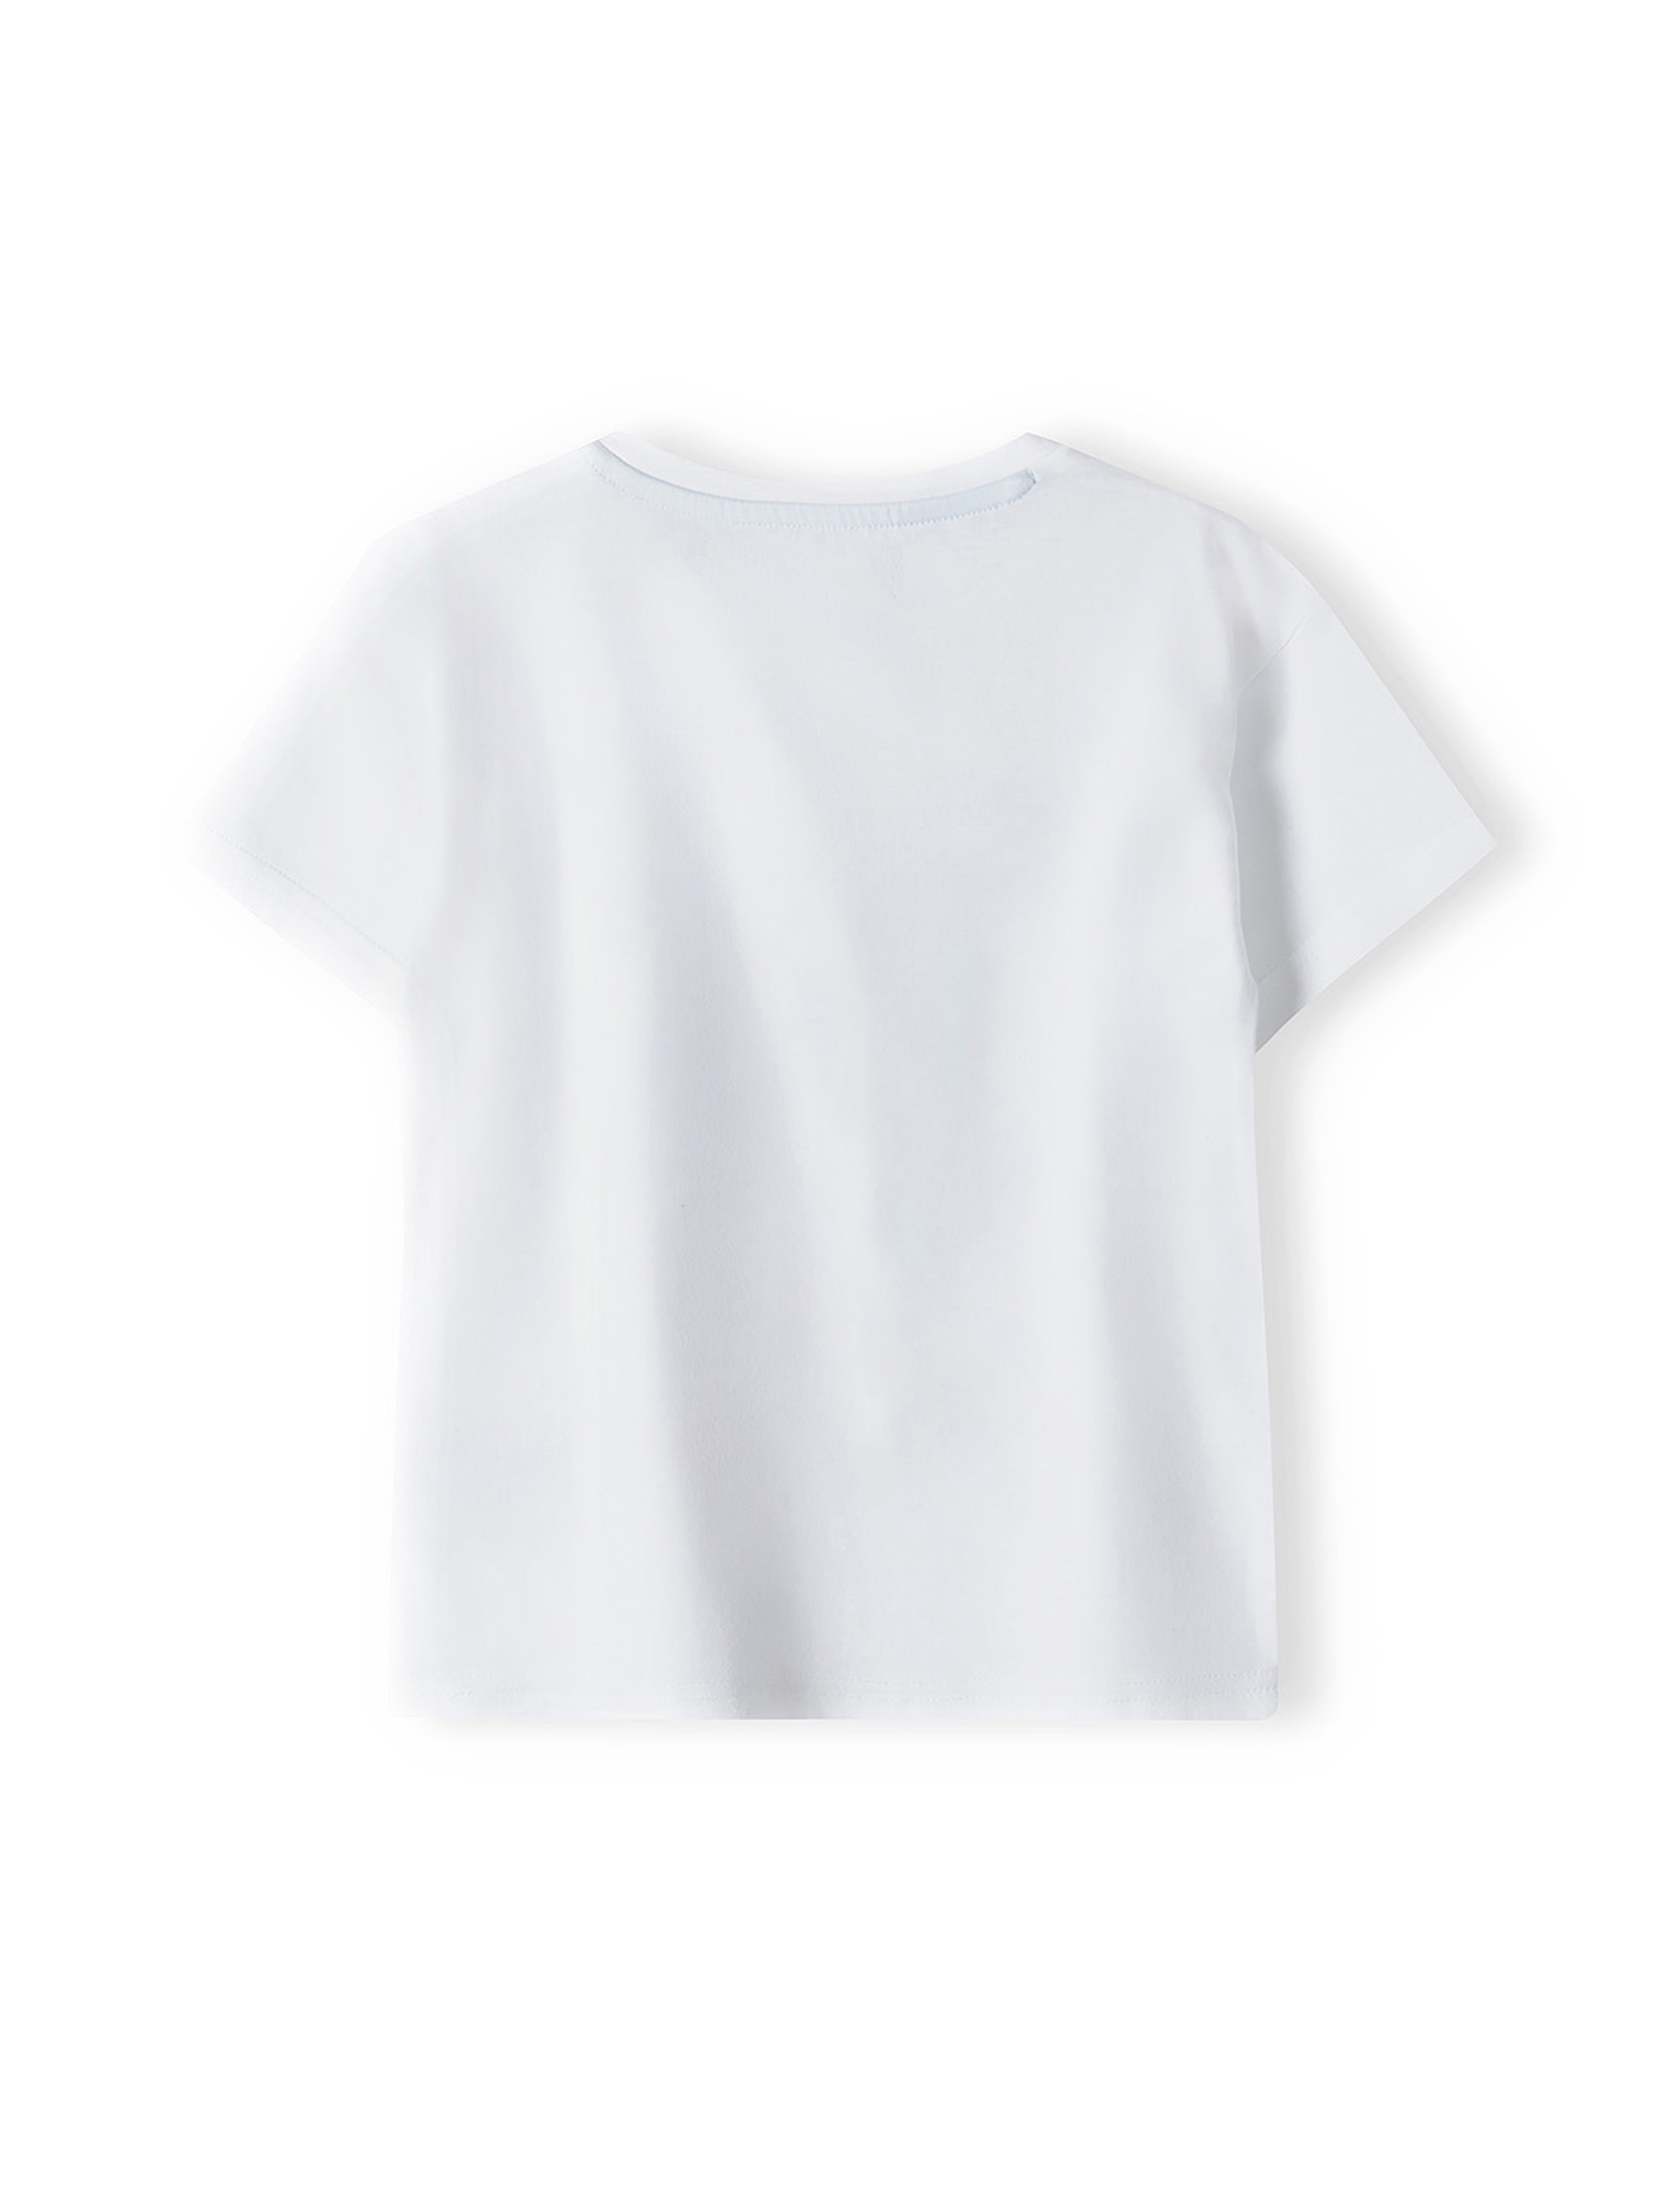 Biała koszulka bawełniana dla niemowlaka z nadrukiem